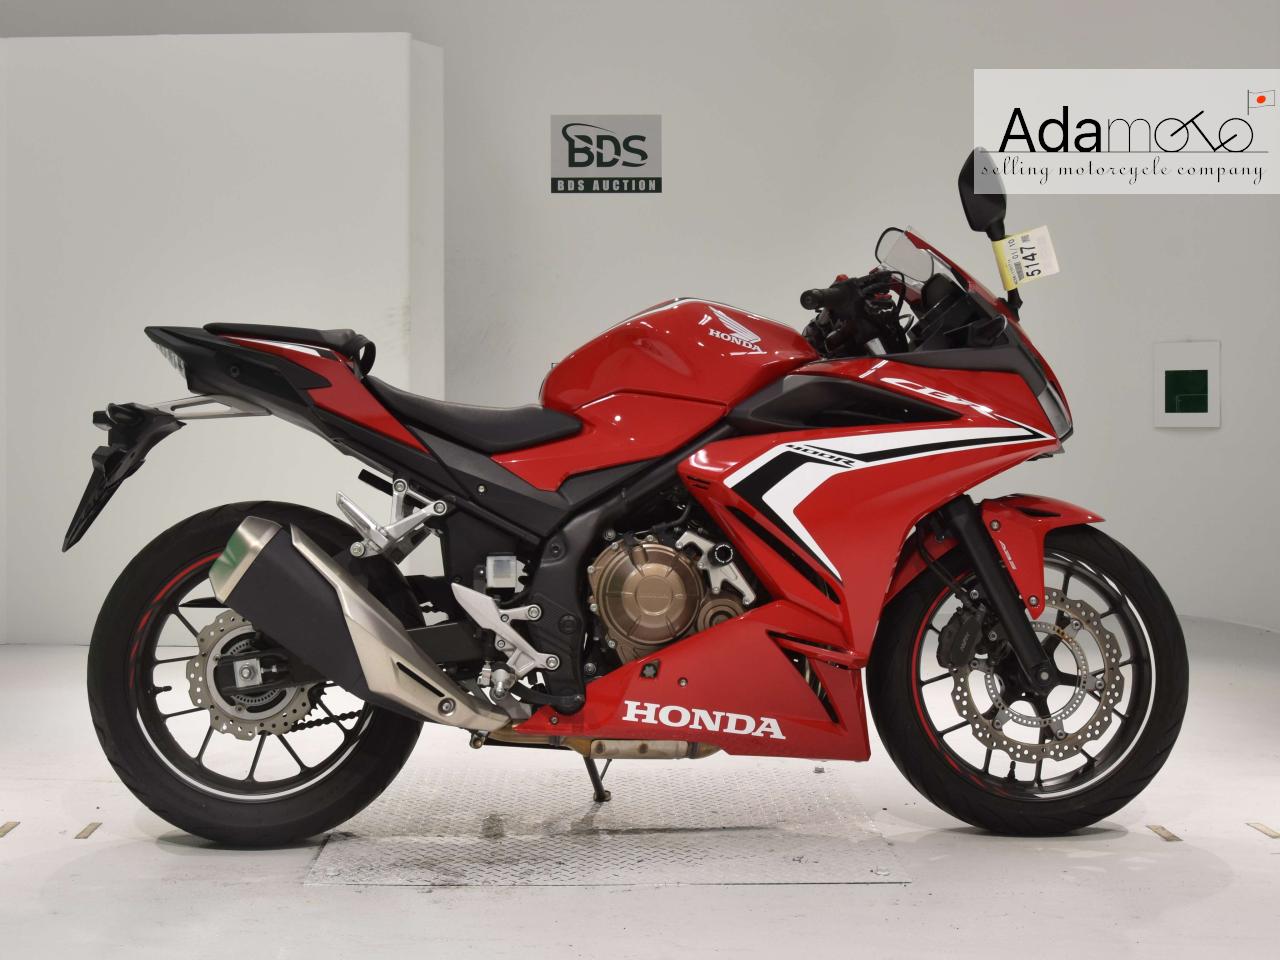 Honda CBR400R 2 - Adamoto - Motorcycles from Japan